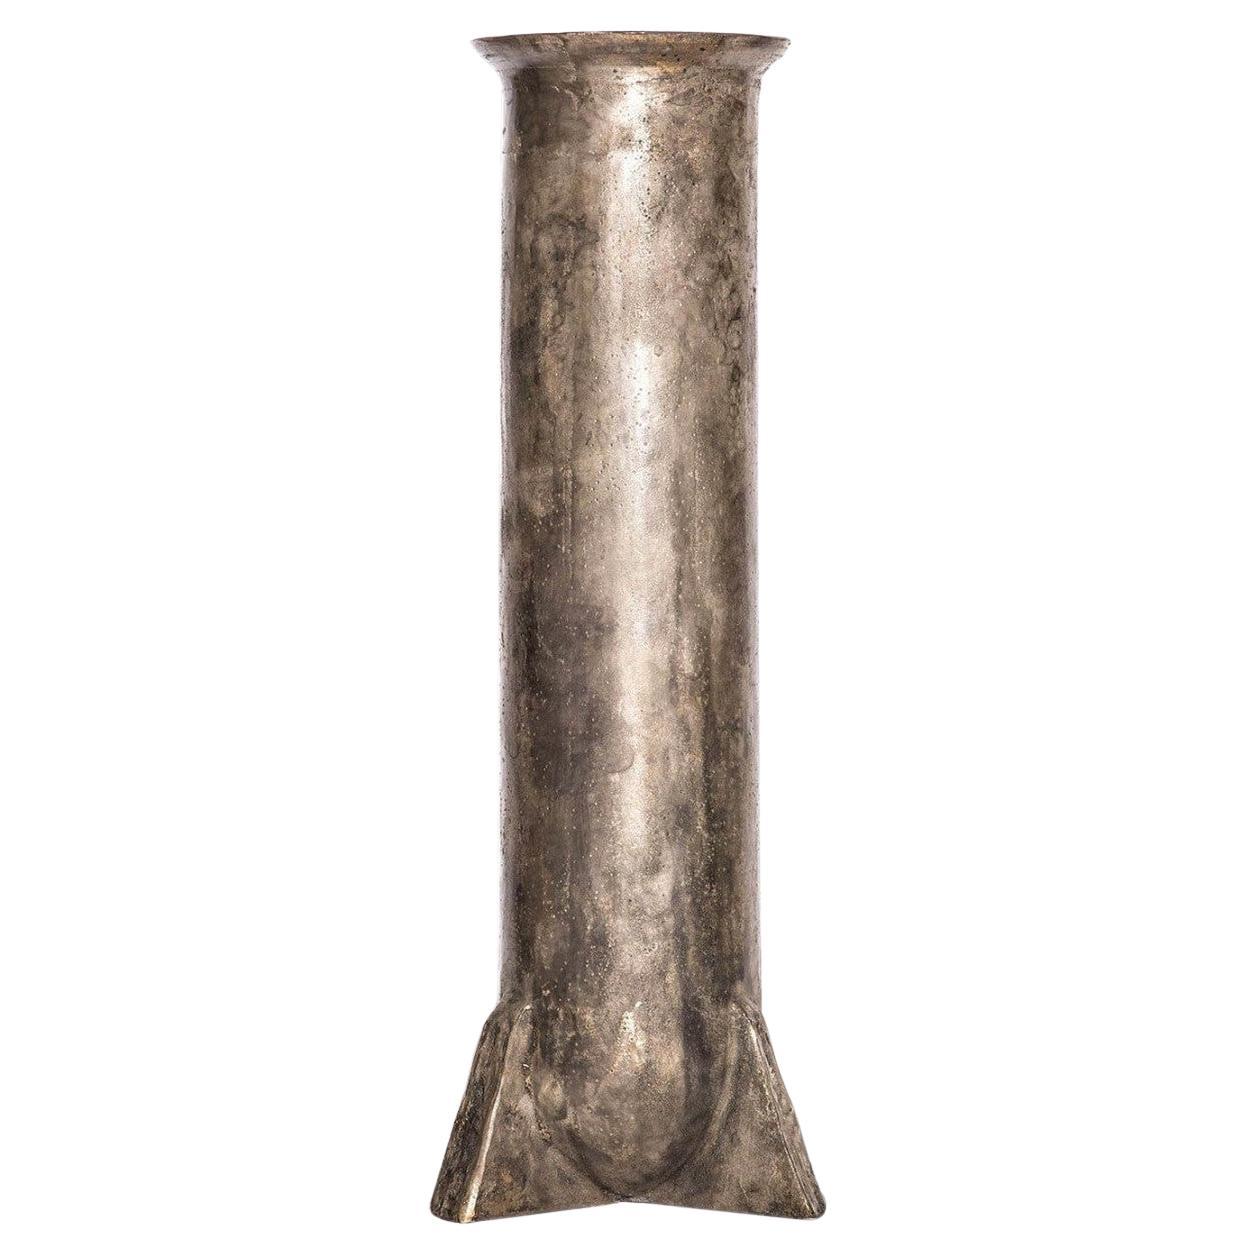 Vase en bronze contemporain, Urnette by Rick Owens